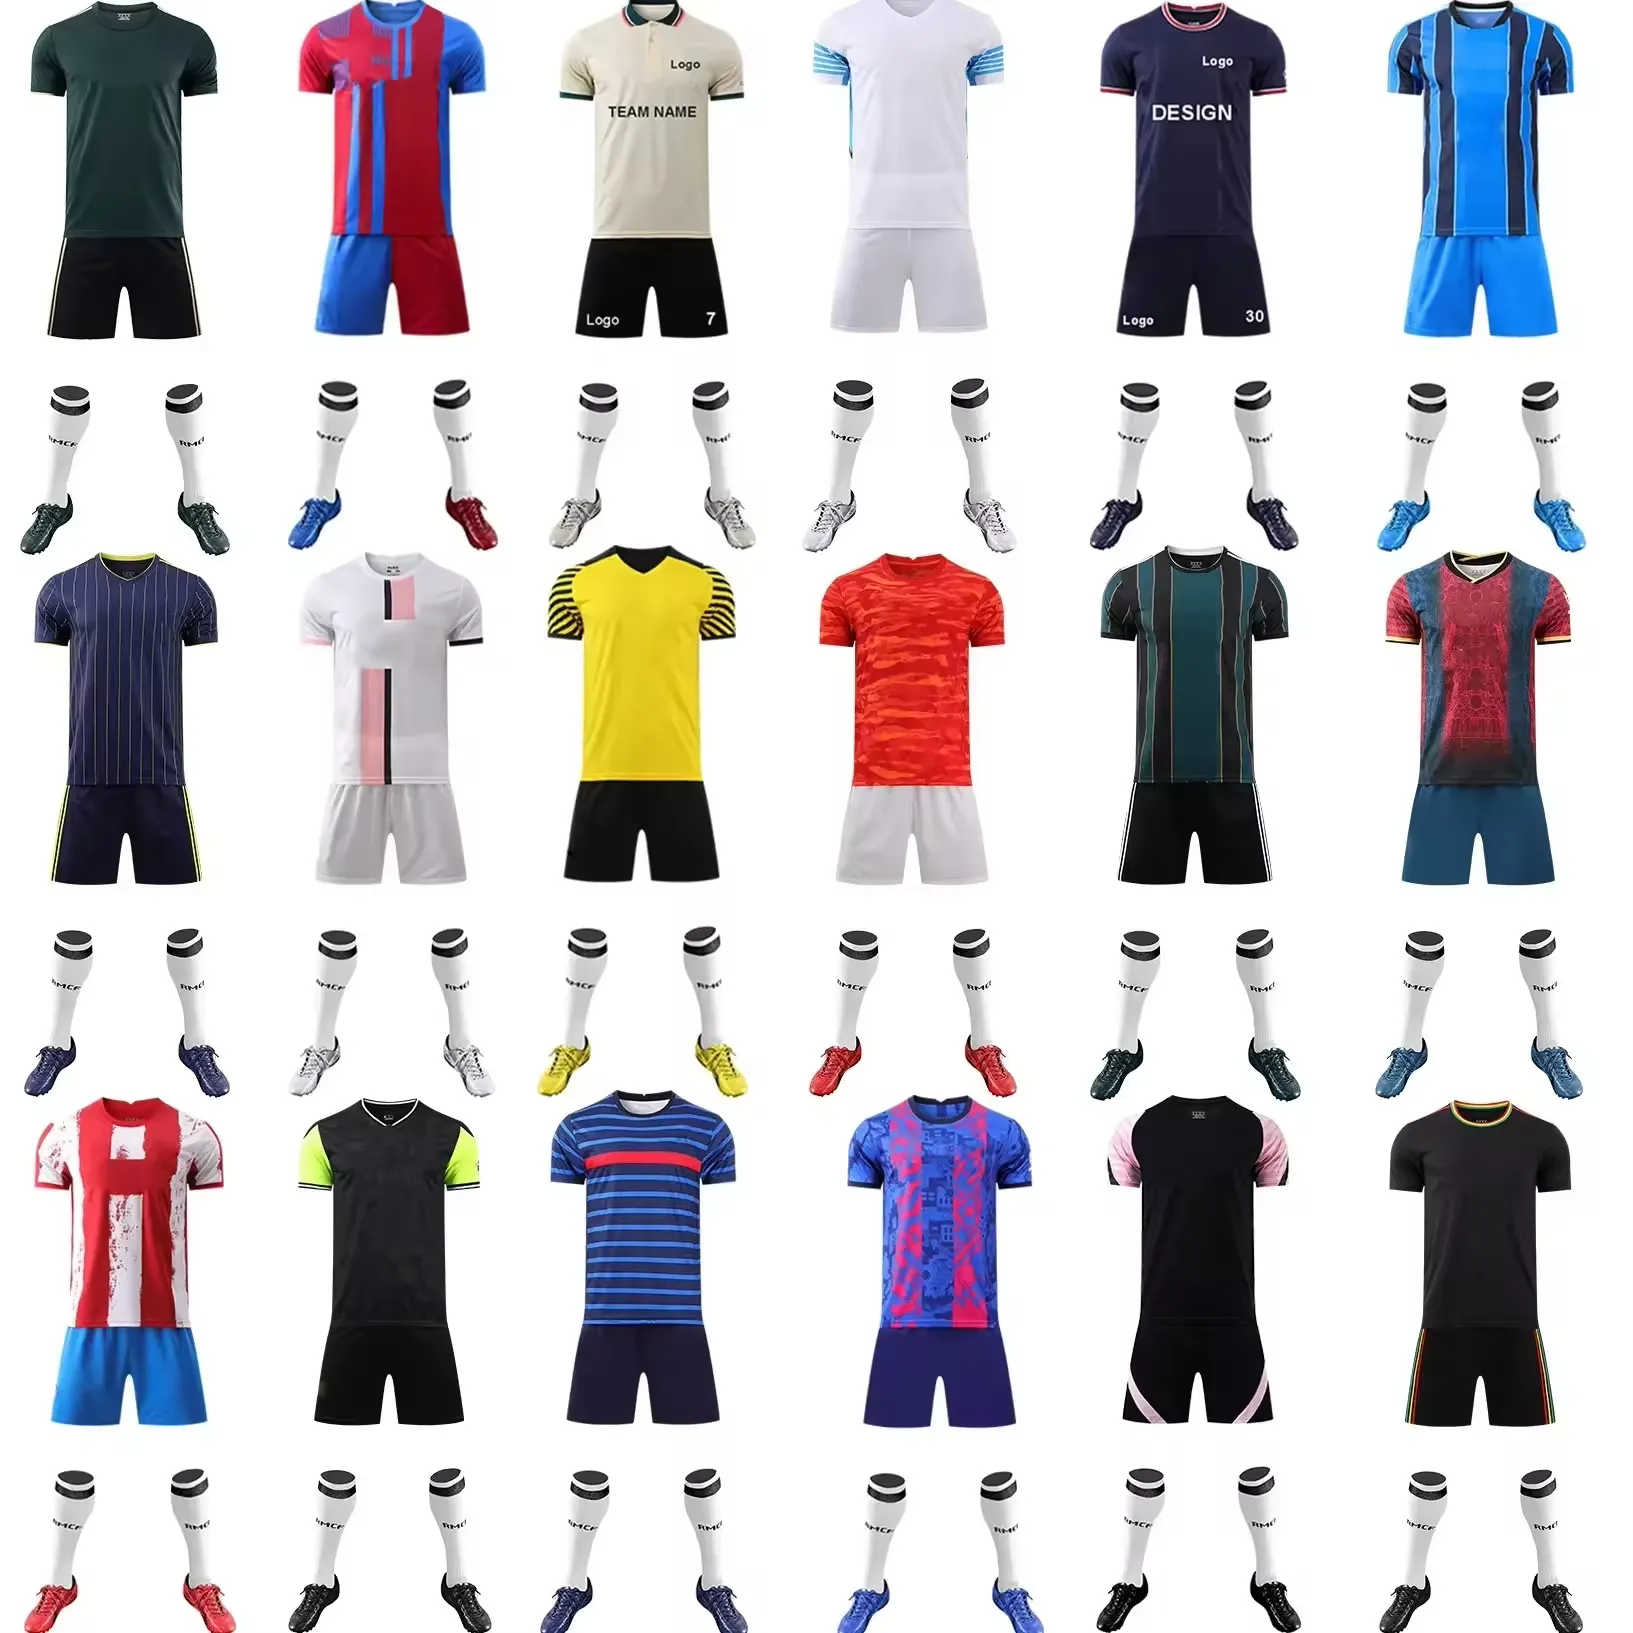 أفضل الموقع لشراء ملابس جيرسيهات كرة القدم على الإنترنت من Luson ملابس موحدة للتدريب على الموضة القدمية جيرسيهات كرة قدم بيضاء بسعر رخيص للفرق